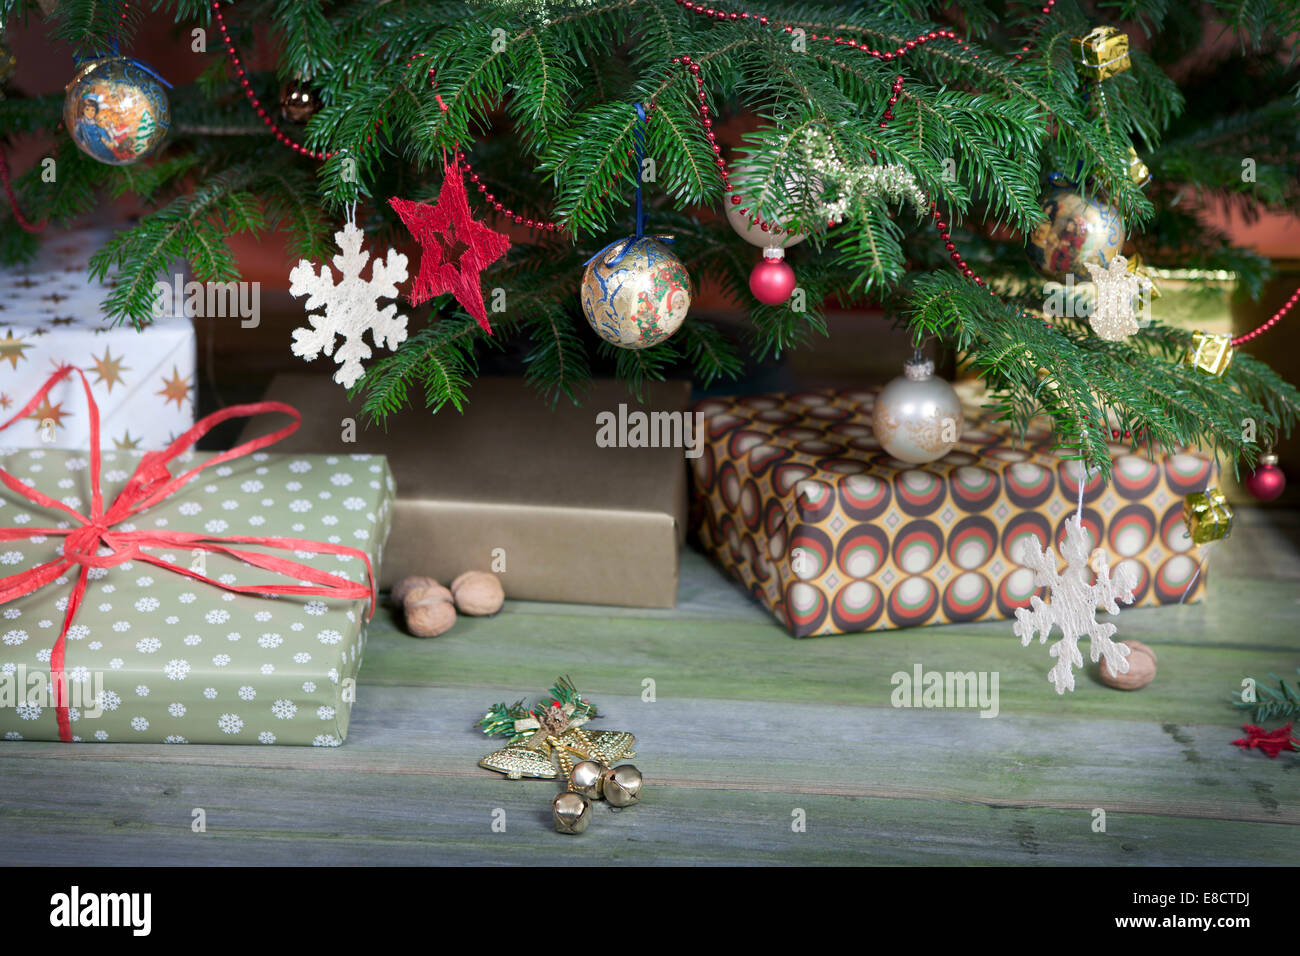 Weihnachtsbaum vor weißem Hintergrund mit vielen Geschenken Stockfoto